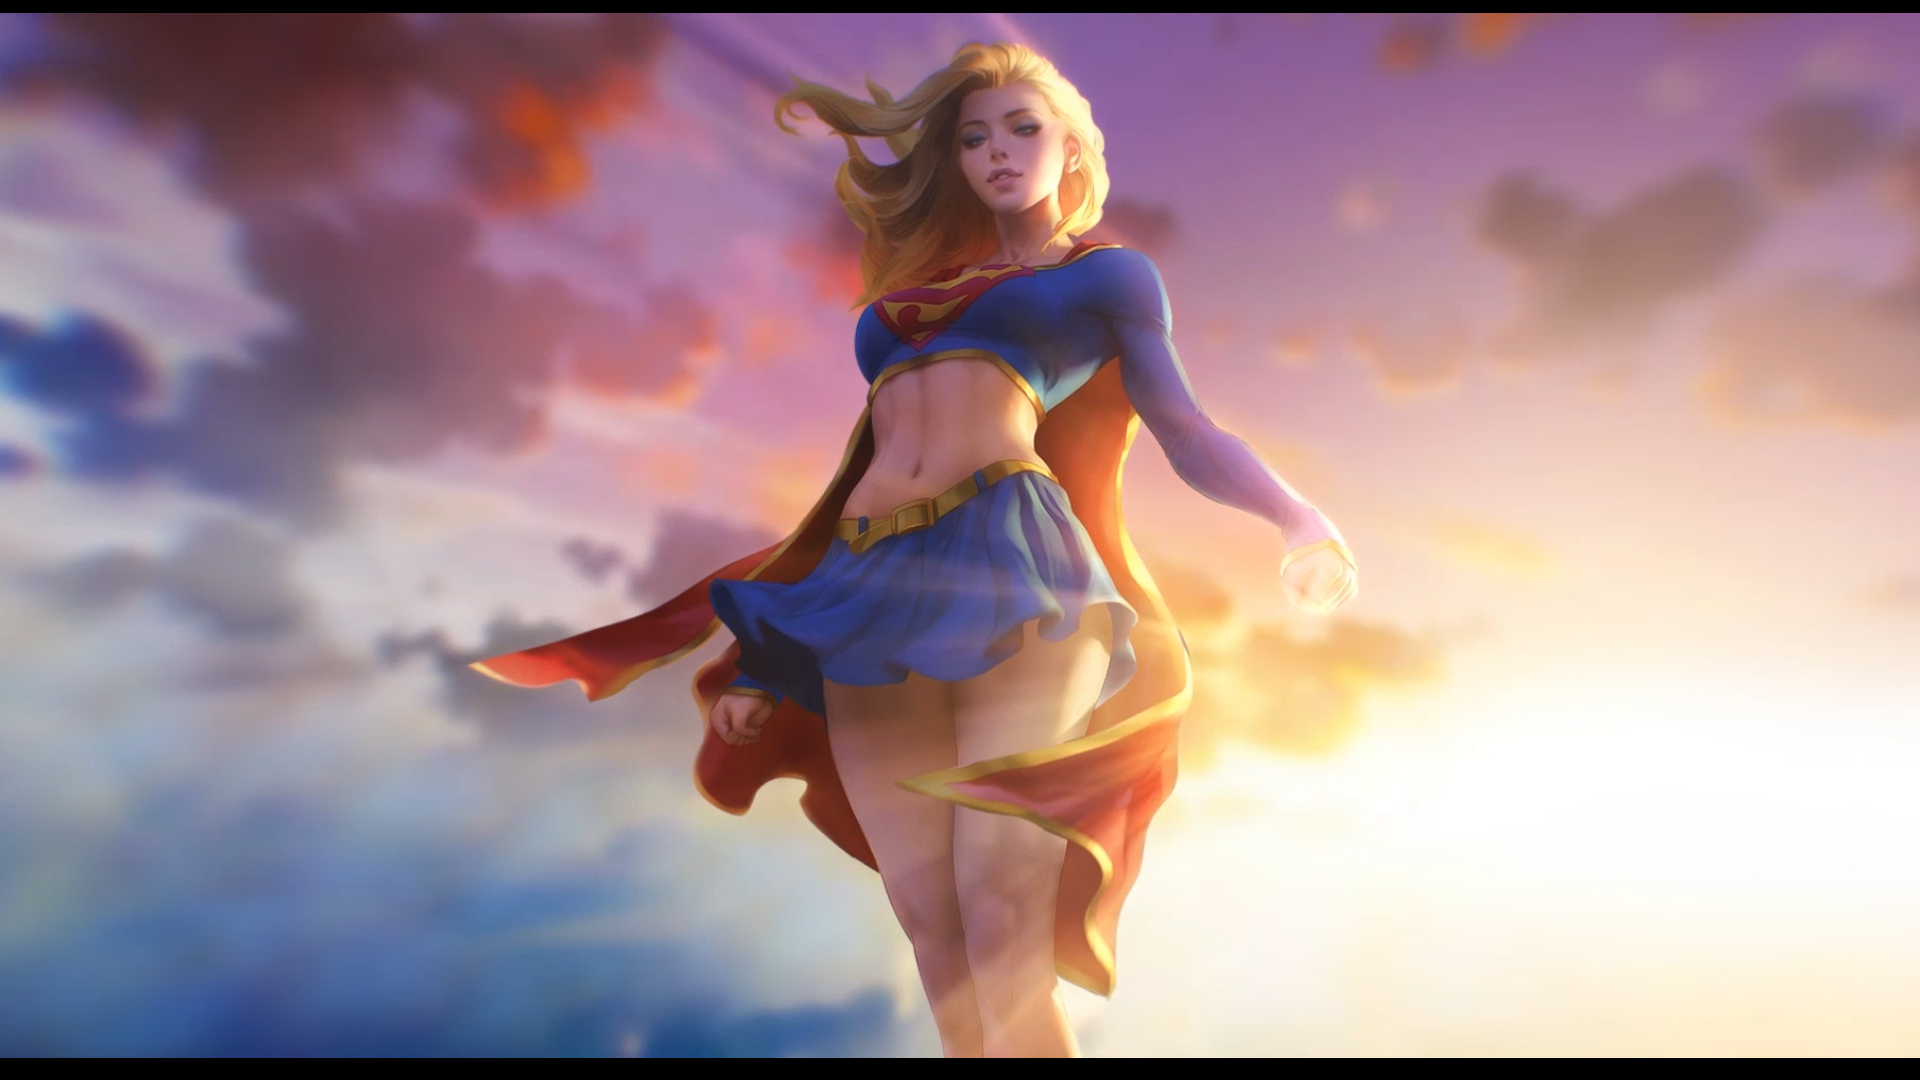 General 1920x1080 Supergirl DC Comics skirt blonde Artgerm blue skirt cape clouds